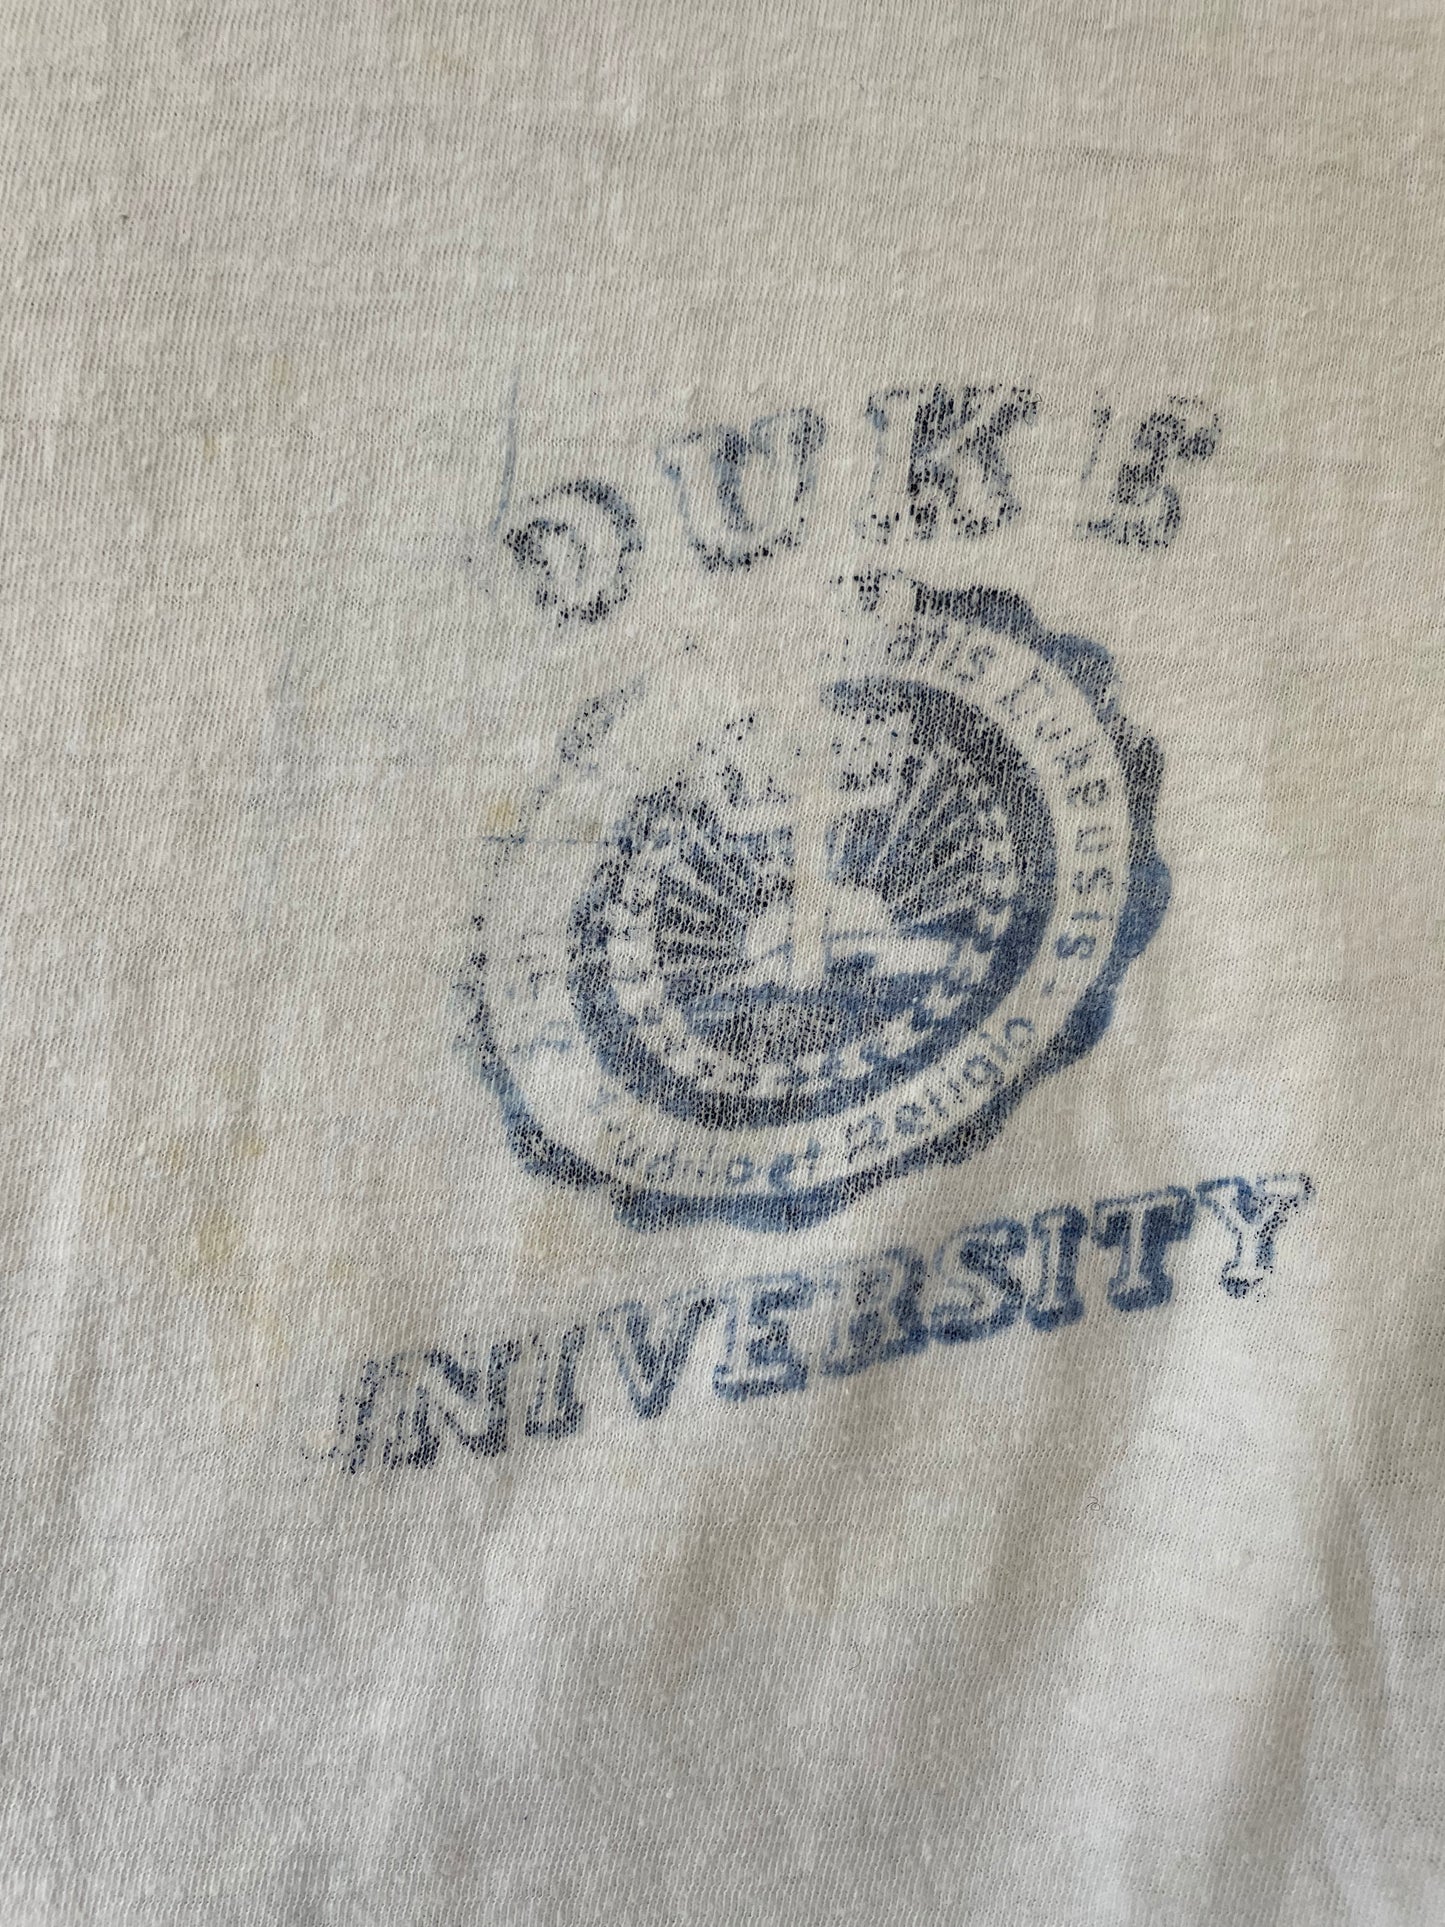 70s Duke University Ringer Tee